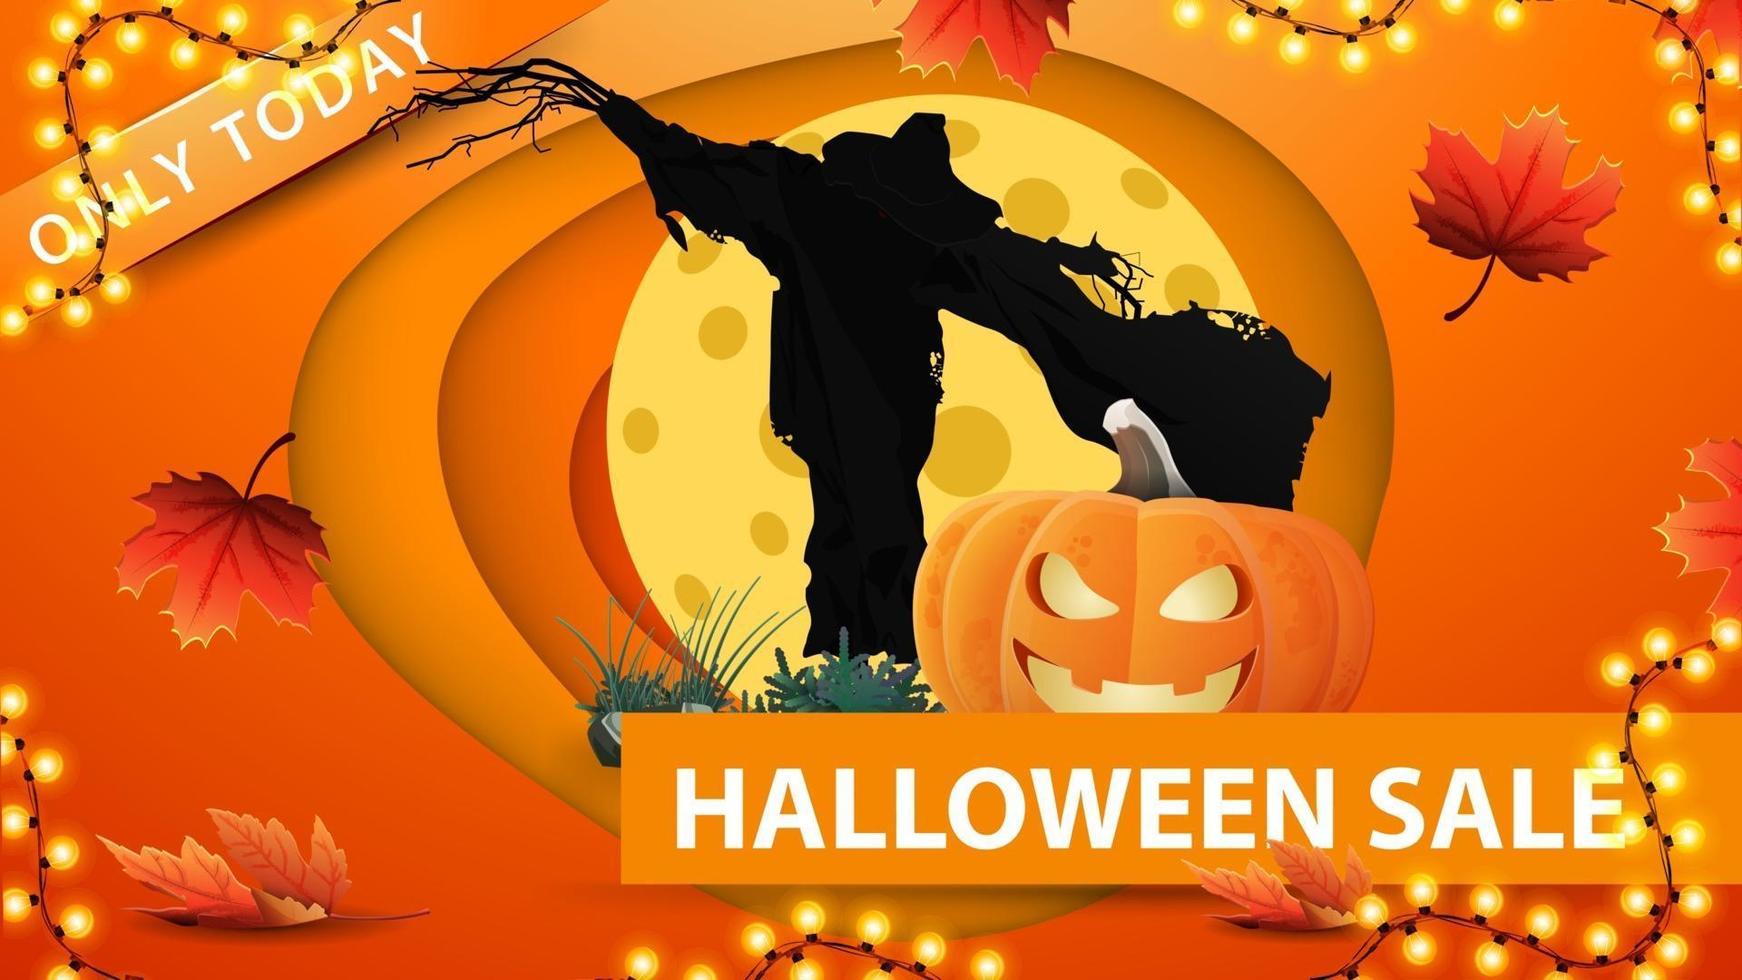 venda de halloween, banner de web de desconto laranja em estilo de corte de papel com espantalho e jack abóbora contra a lua. design moderno de banner de desconto vetor